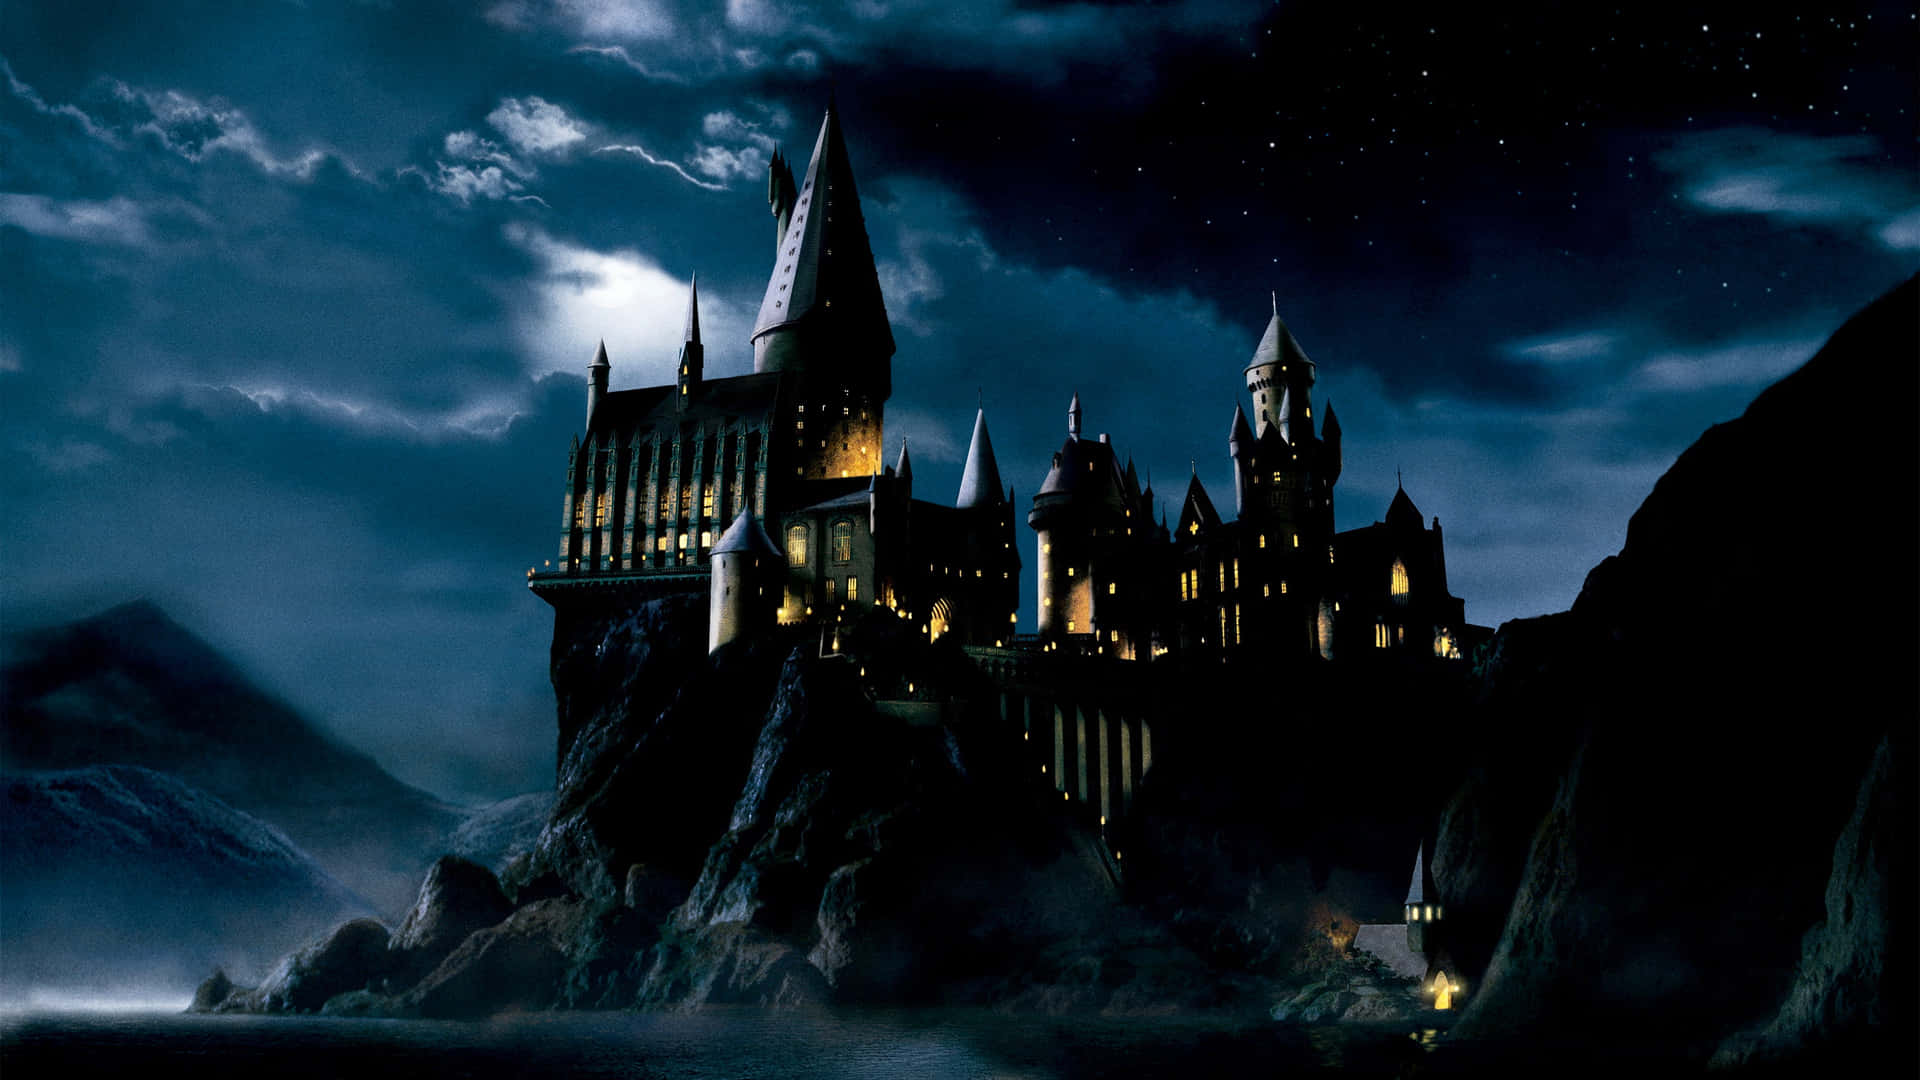 Ilcastello Mistico Di Hogwarts